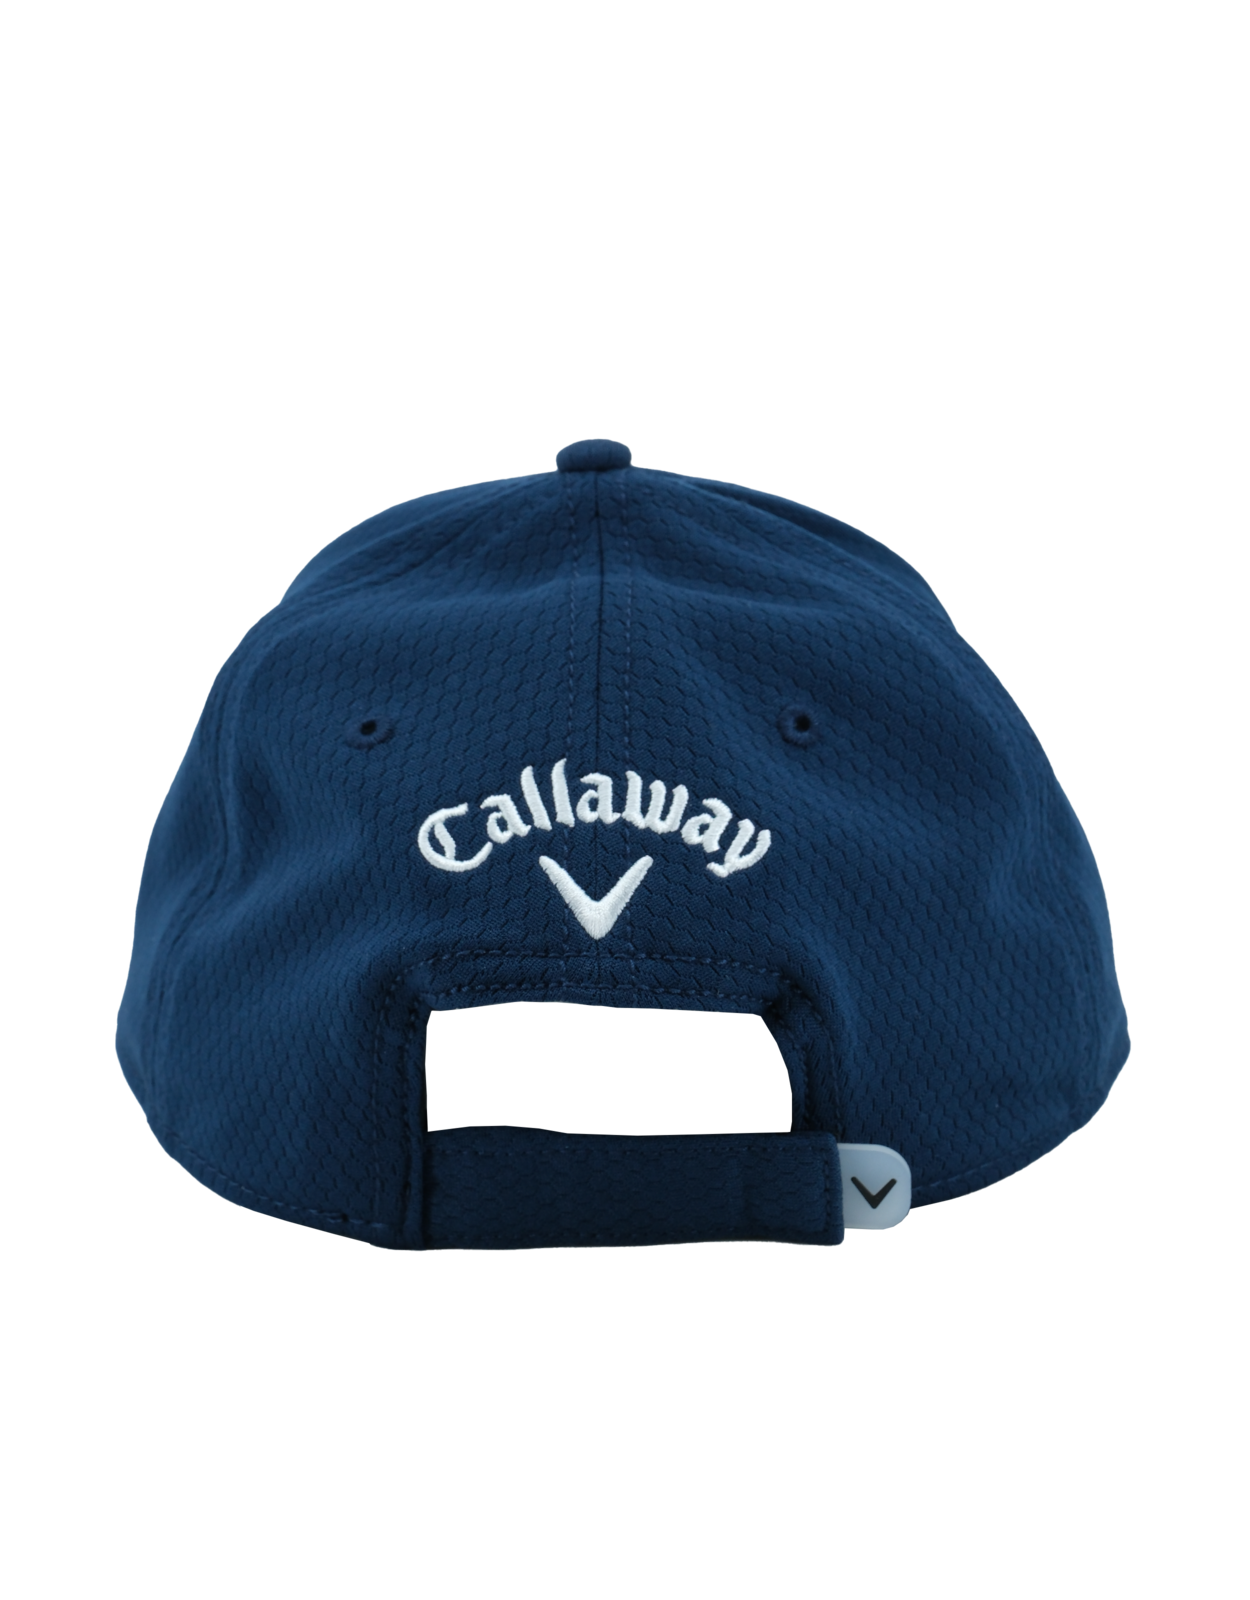 Callaway Golf Cap Navy